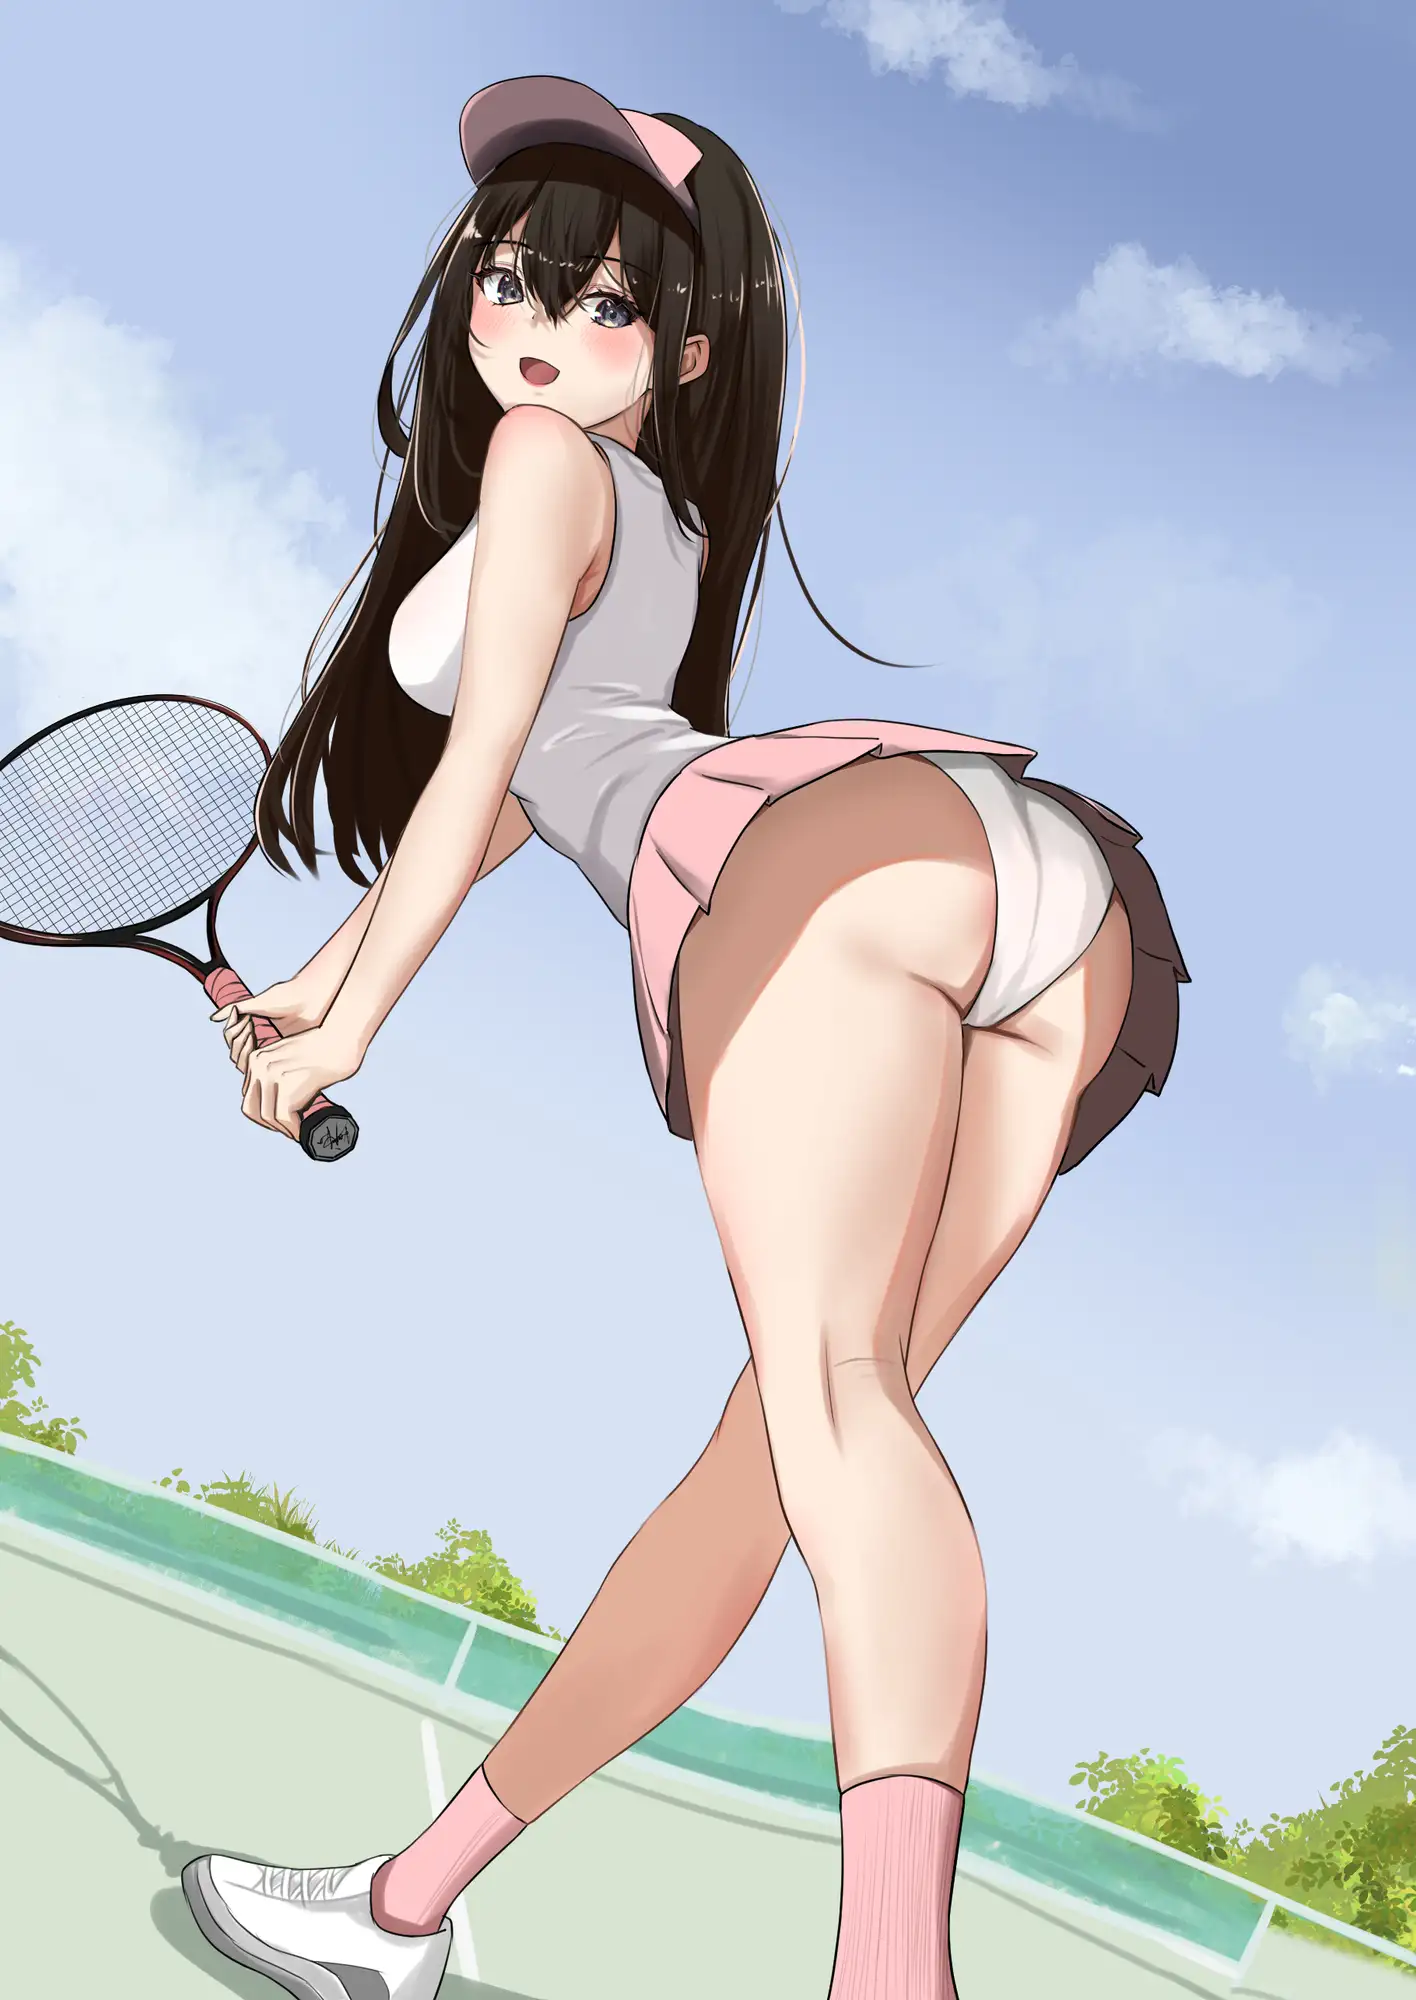 [うさぎ屋]泥酔女子大生、テニスサークルで悪い先輩に酔わされてしまう彼女